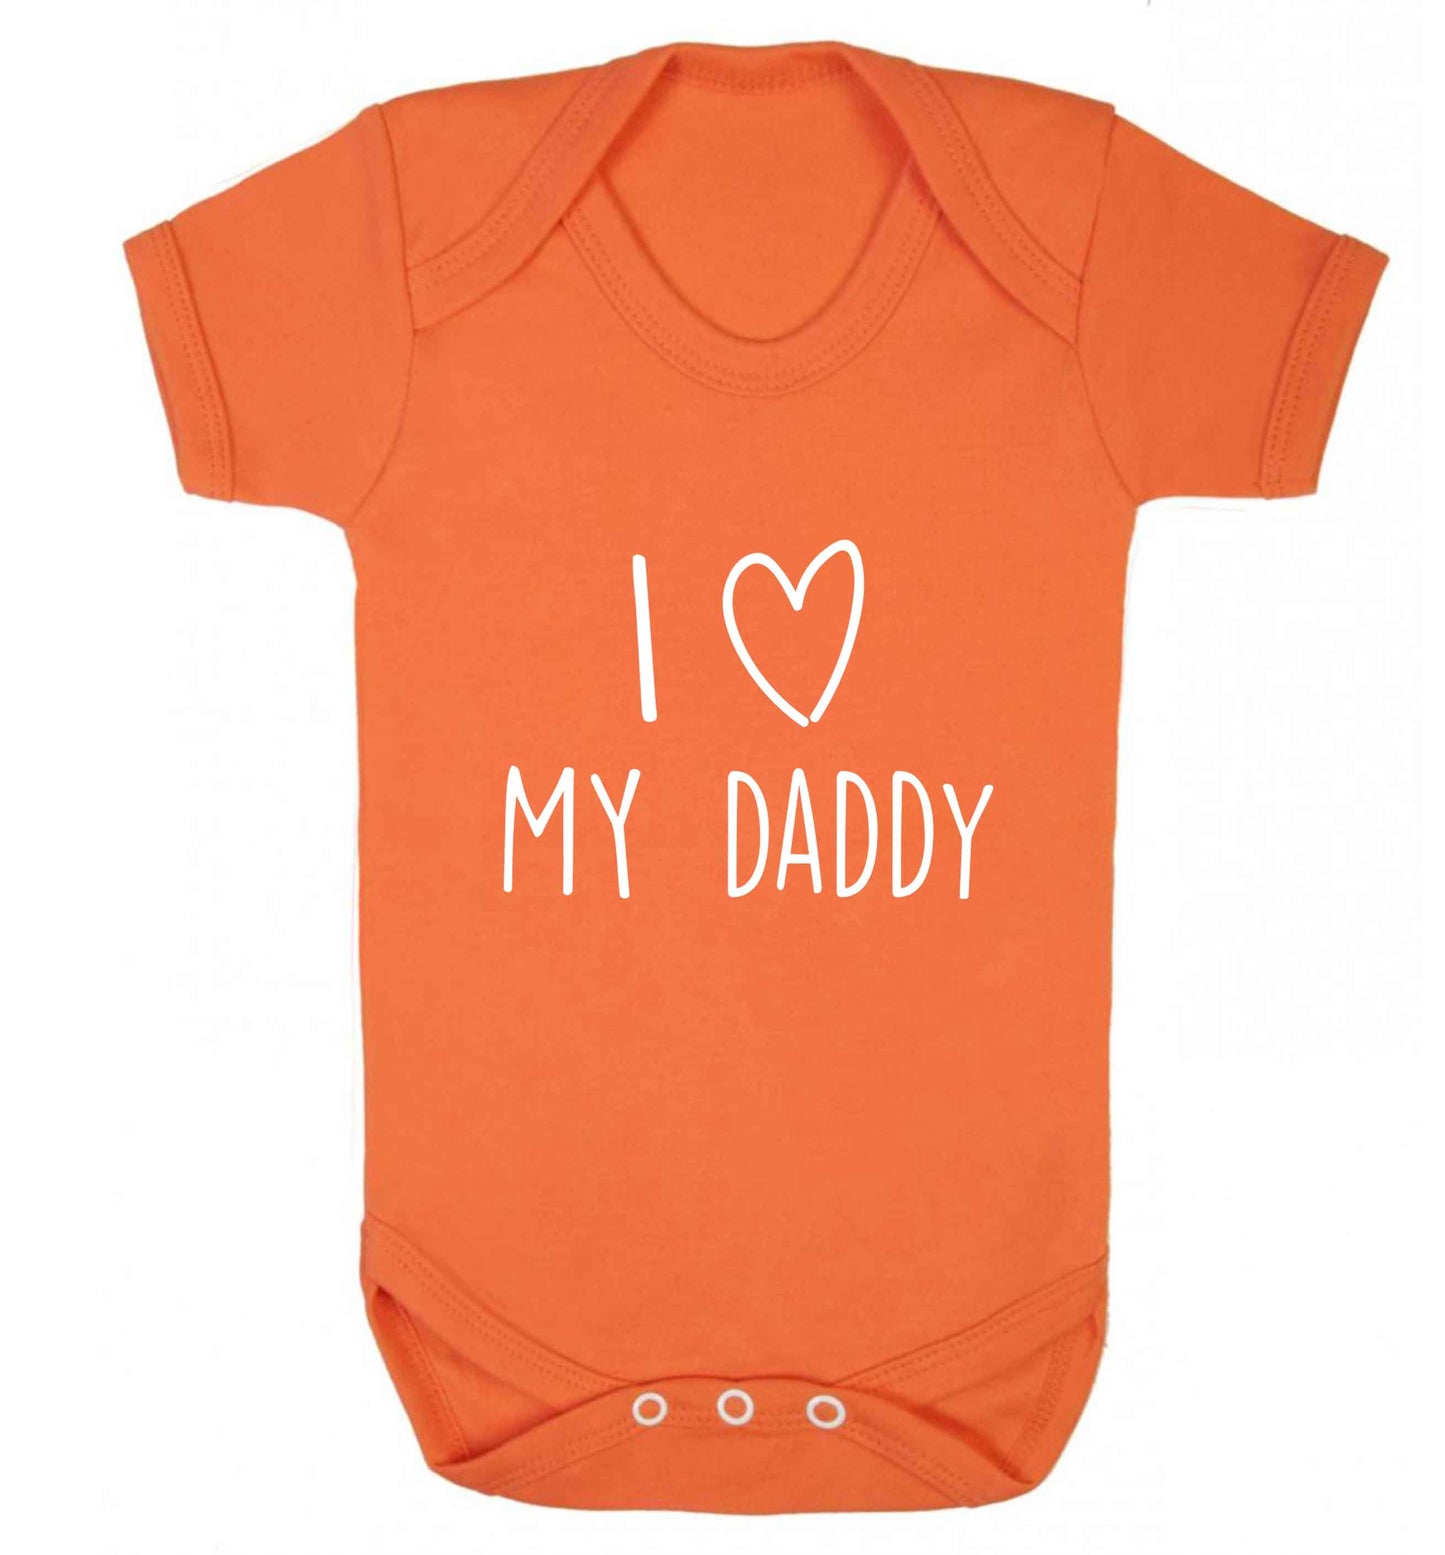 I love my daddy baby vest orange 18-24 months